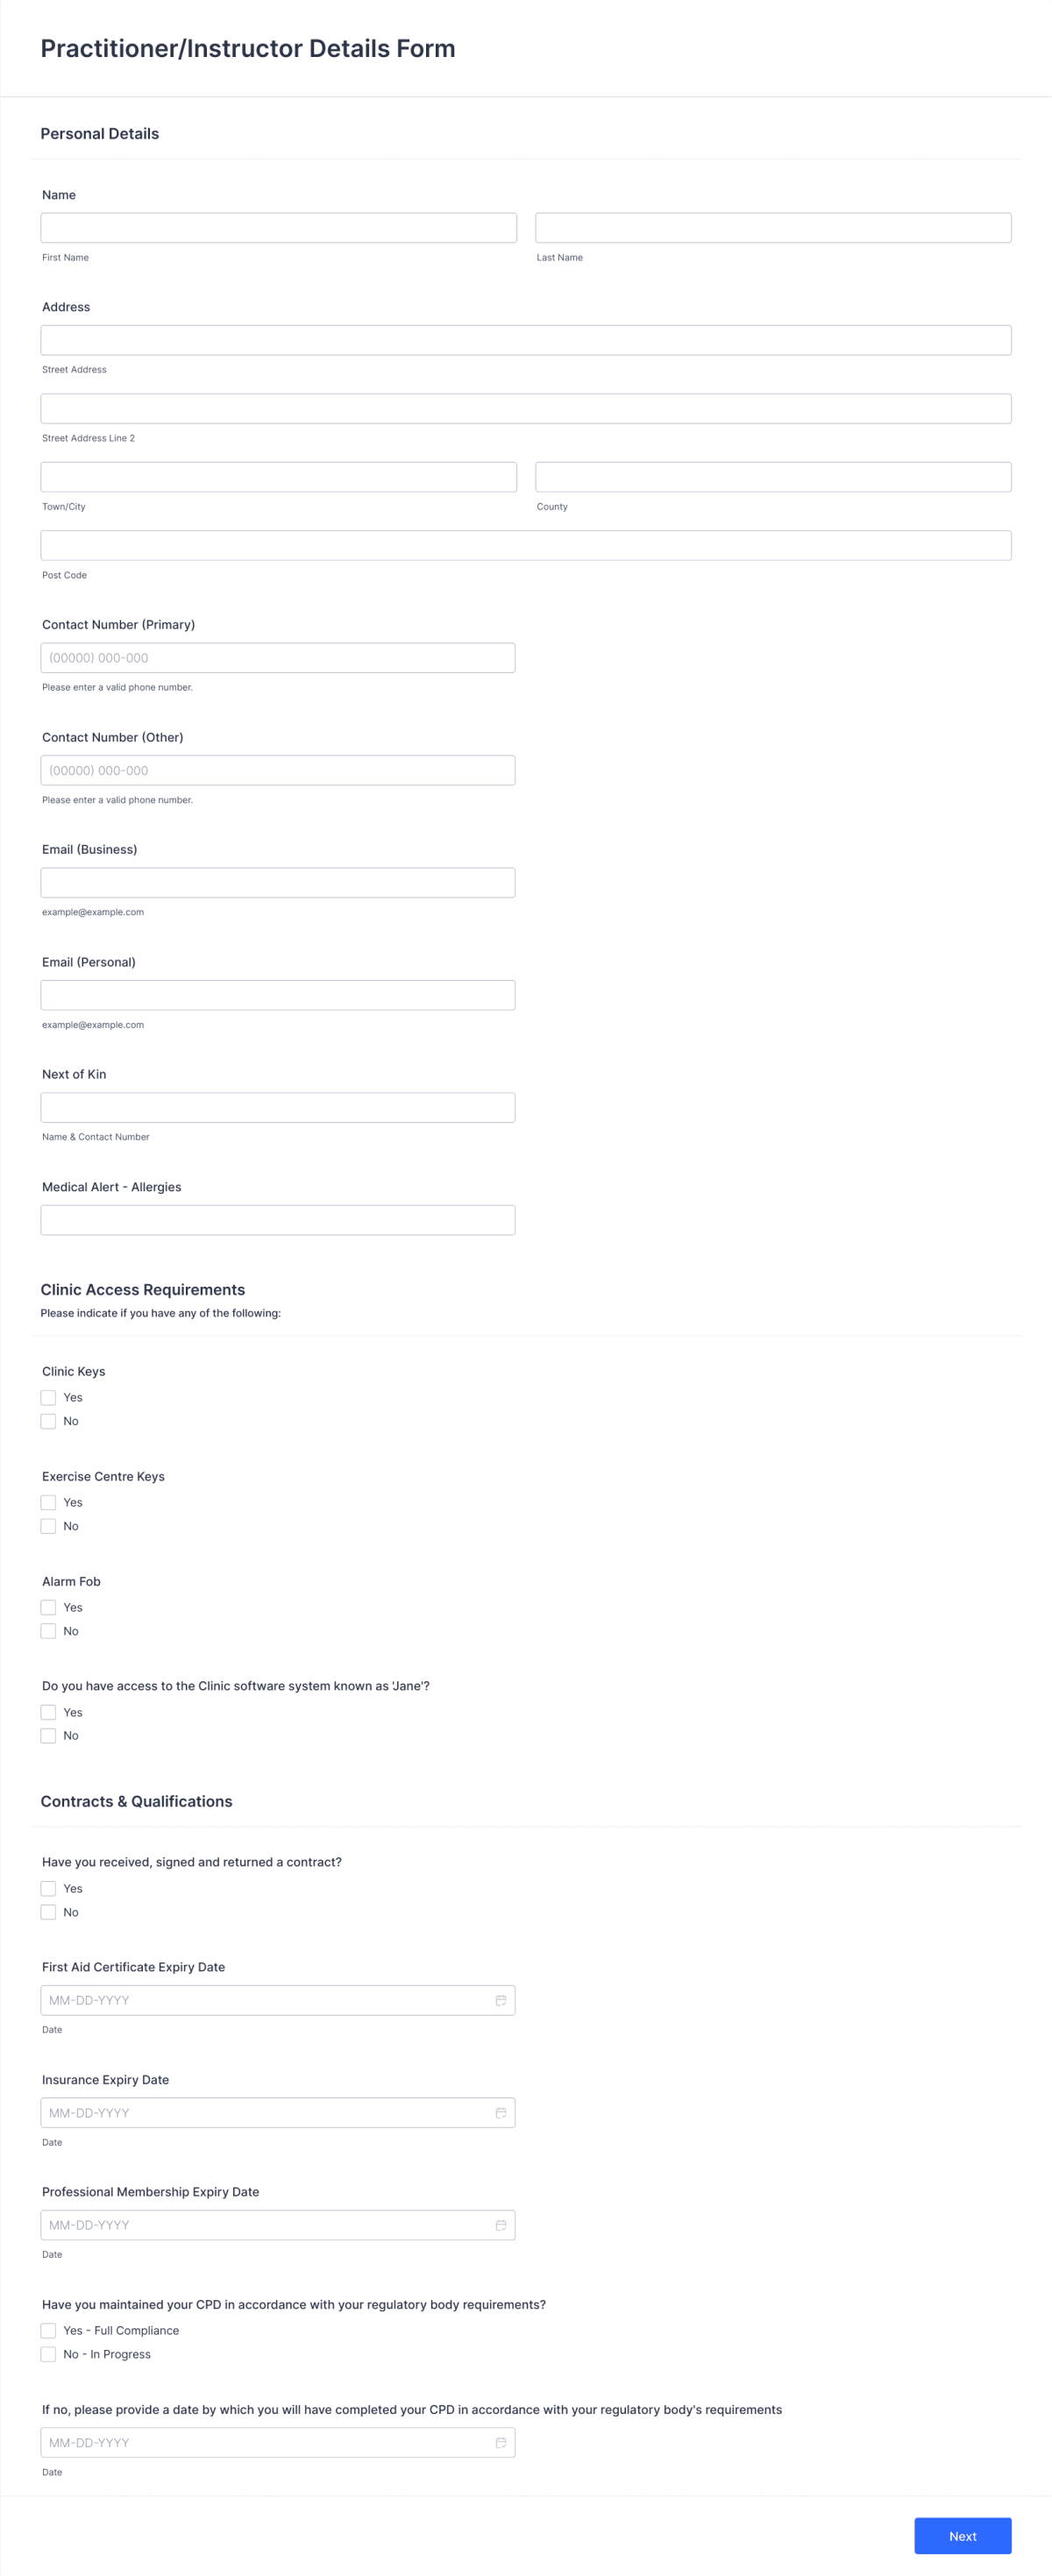 Practitioner/Instructor Details Form Template | Jotform